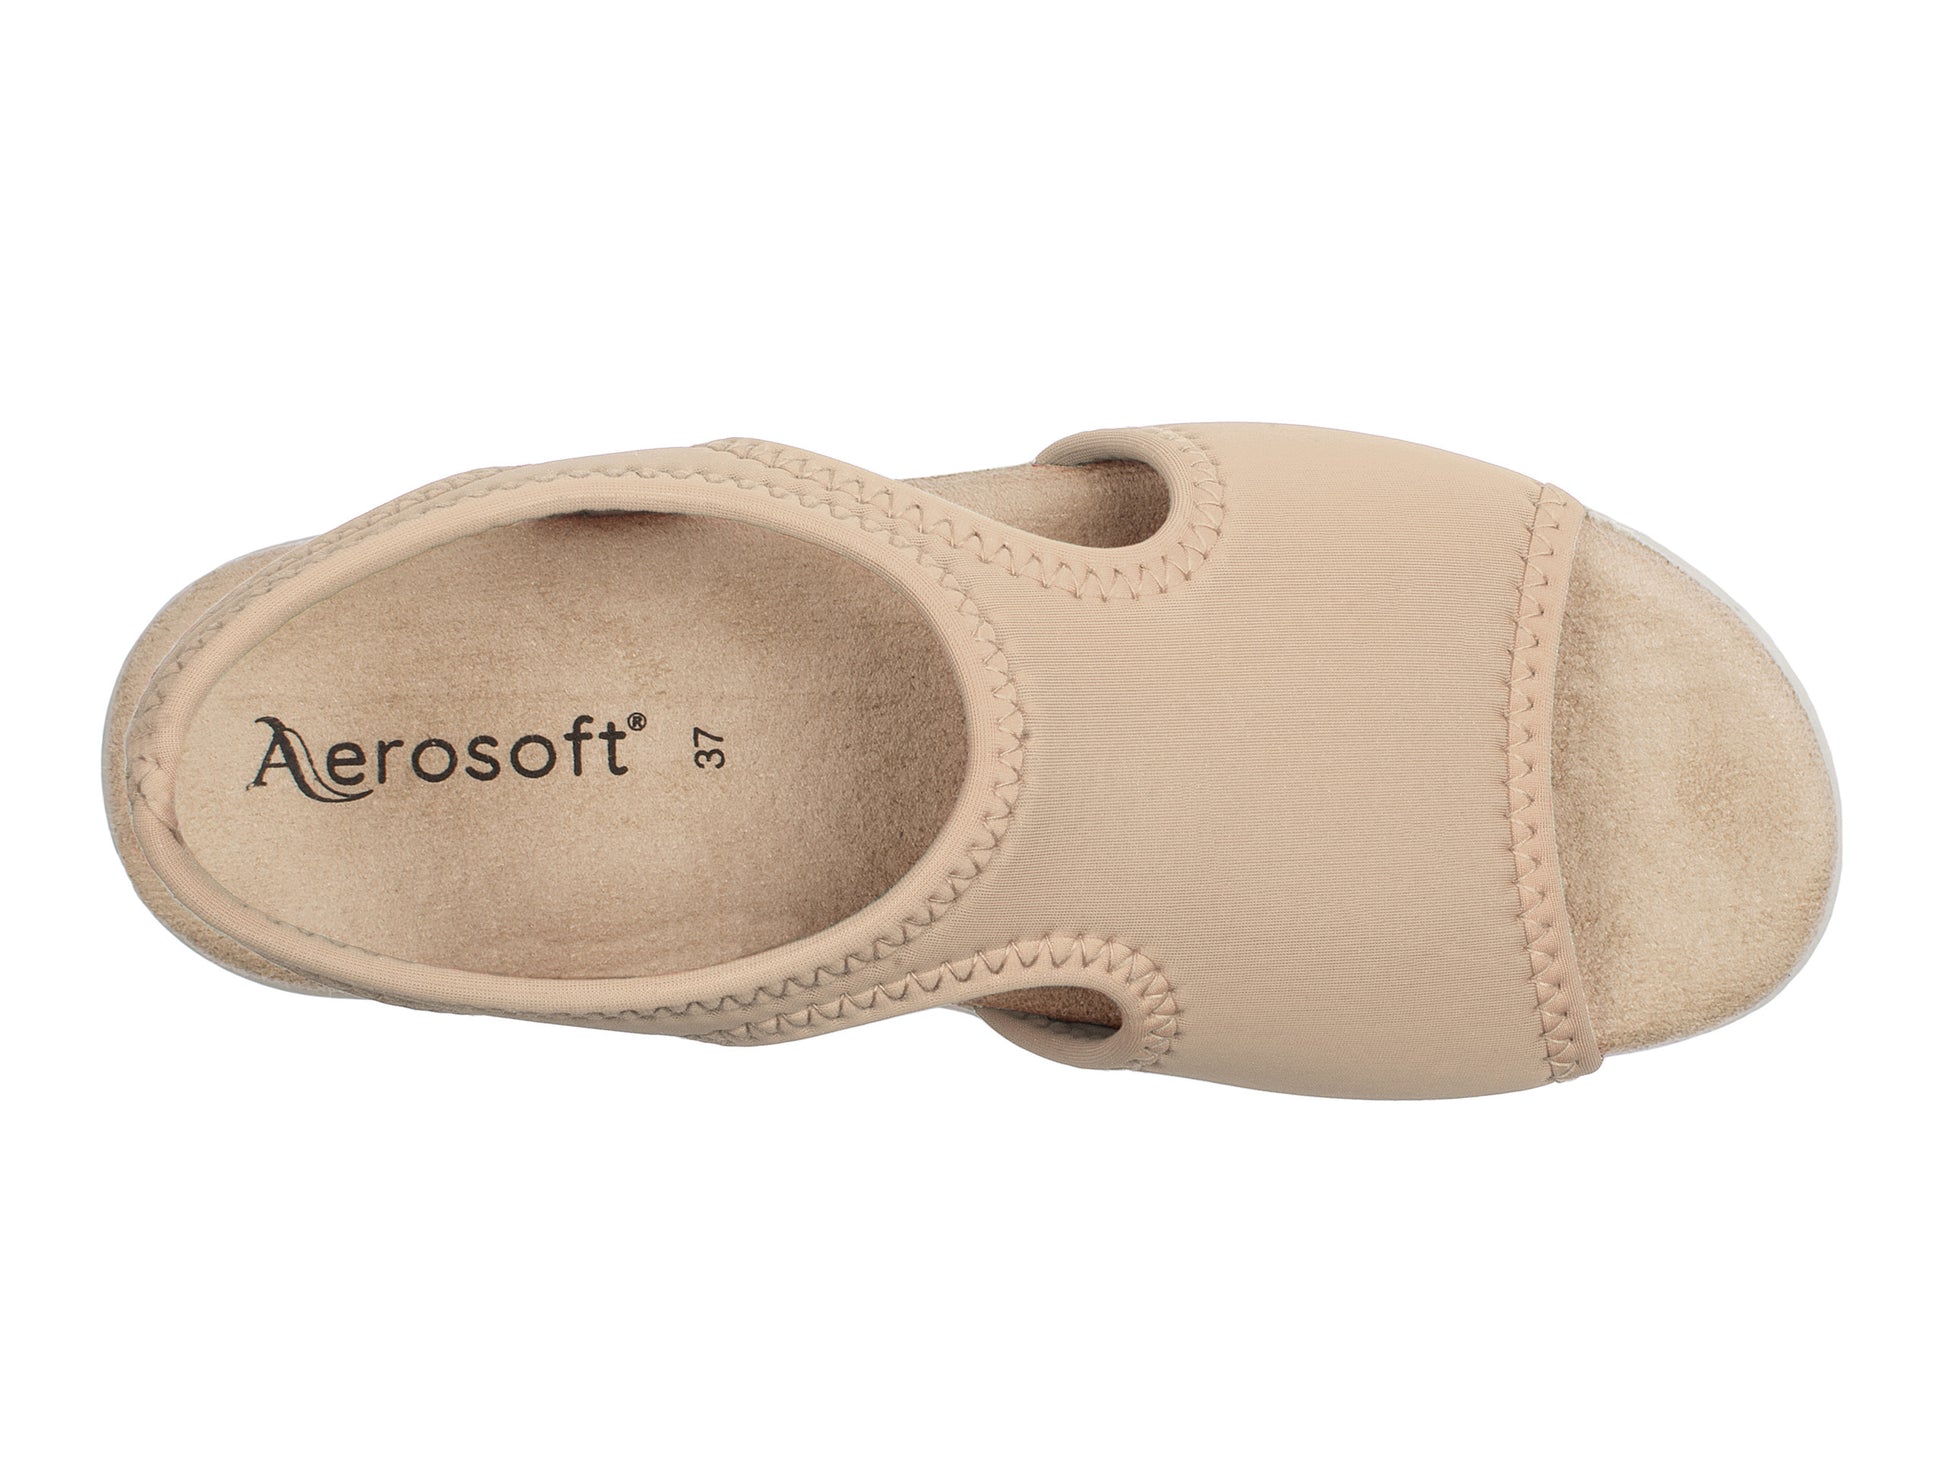 Damen Stretch Sandalette Modell Stretch 05 von Aerosoft in Farbe beige von oben